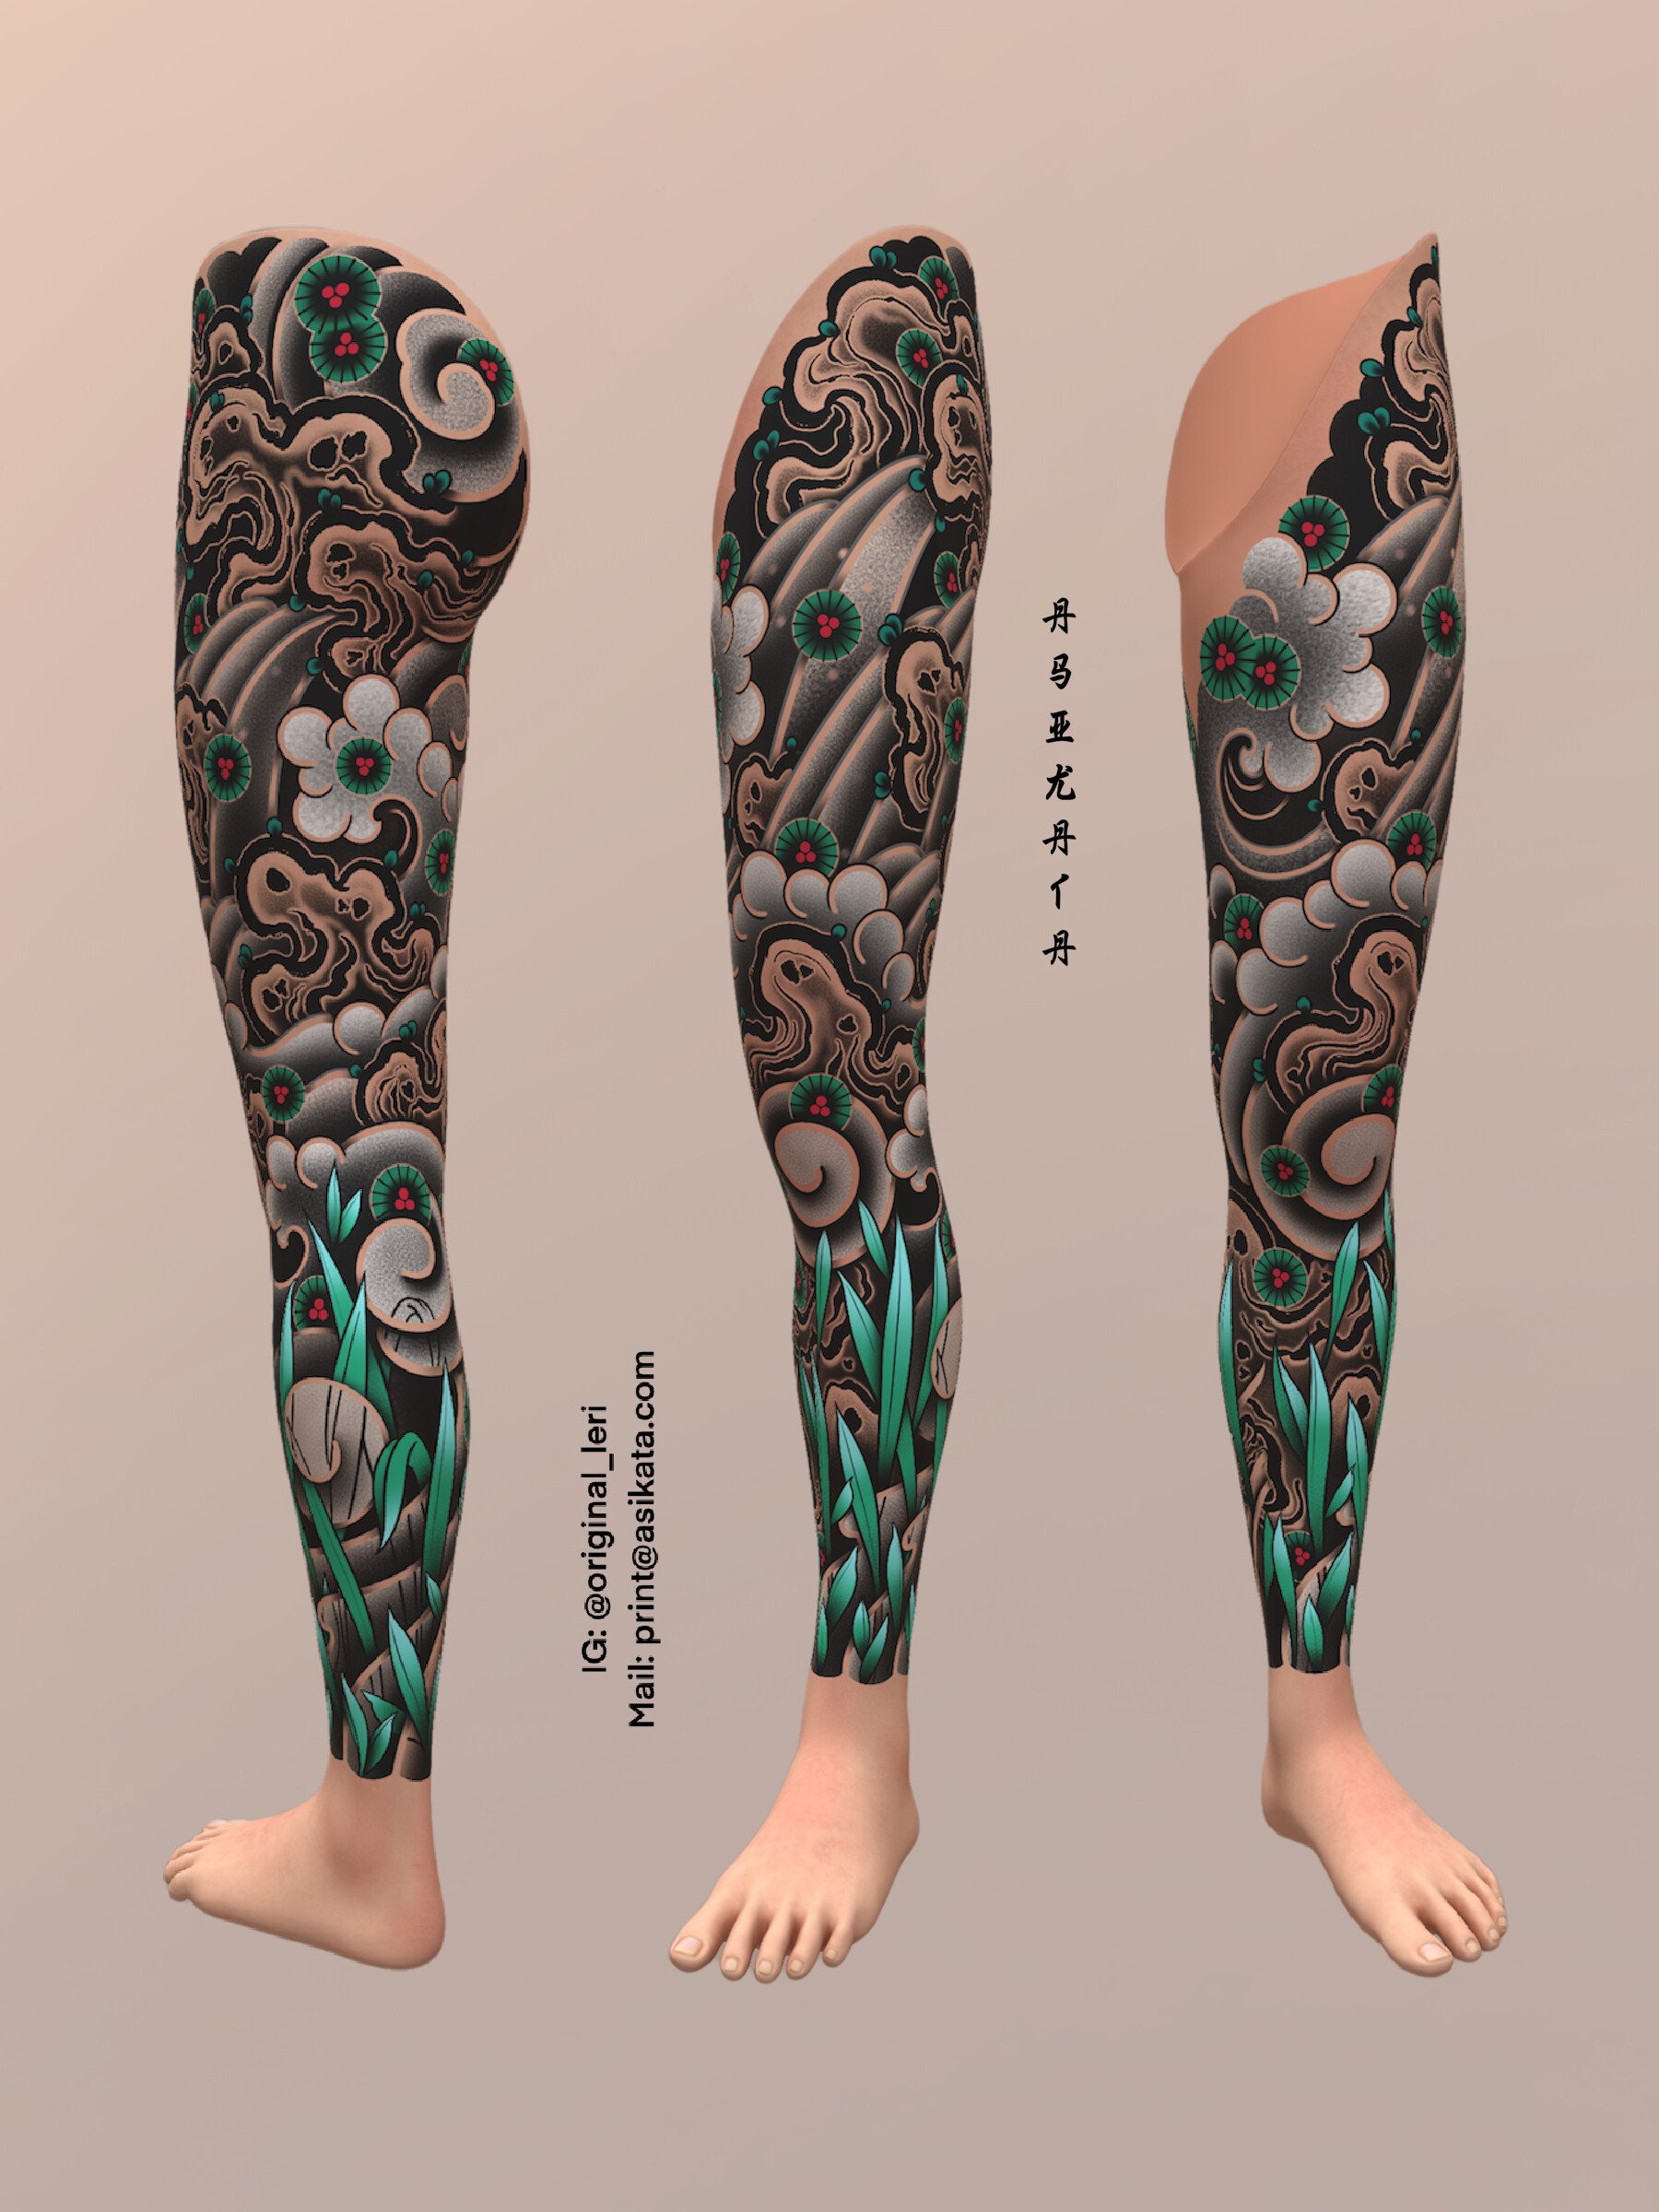 108 Great Looking Tribal Tattoos On Leg  Tattoo Designs  TattoosBagcom